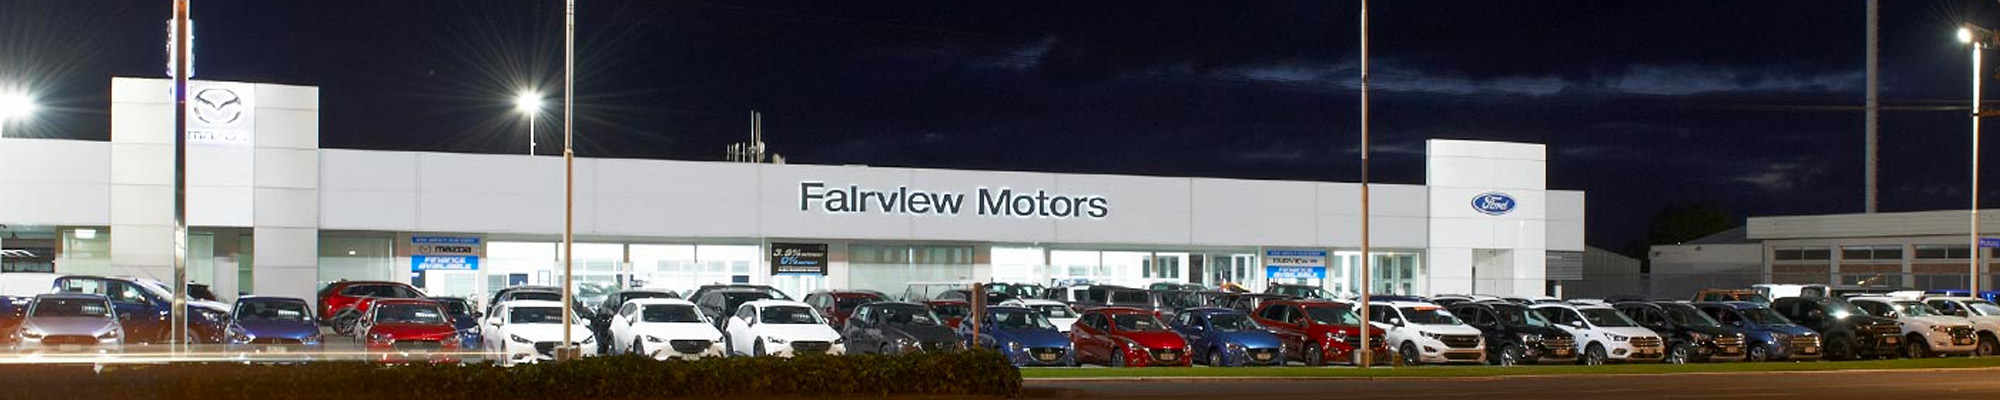 Fairview Motors